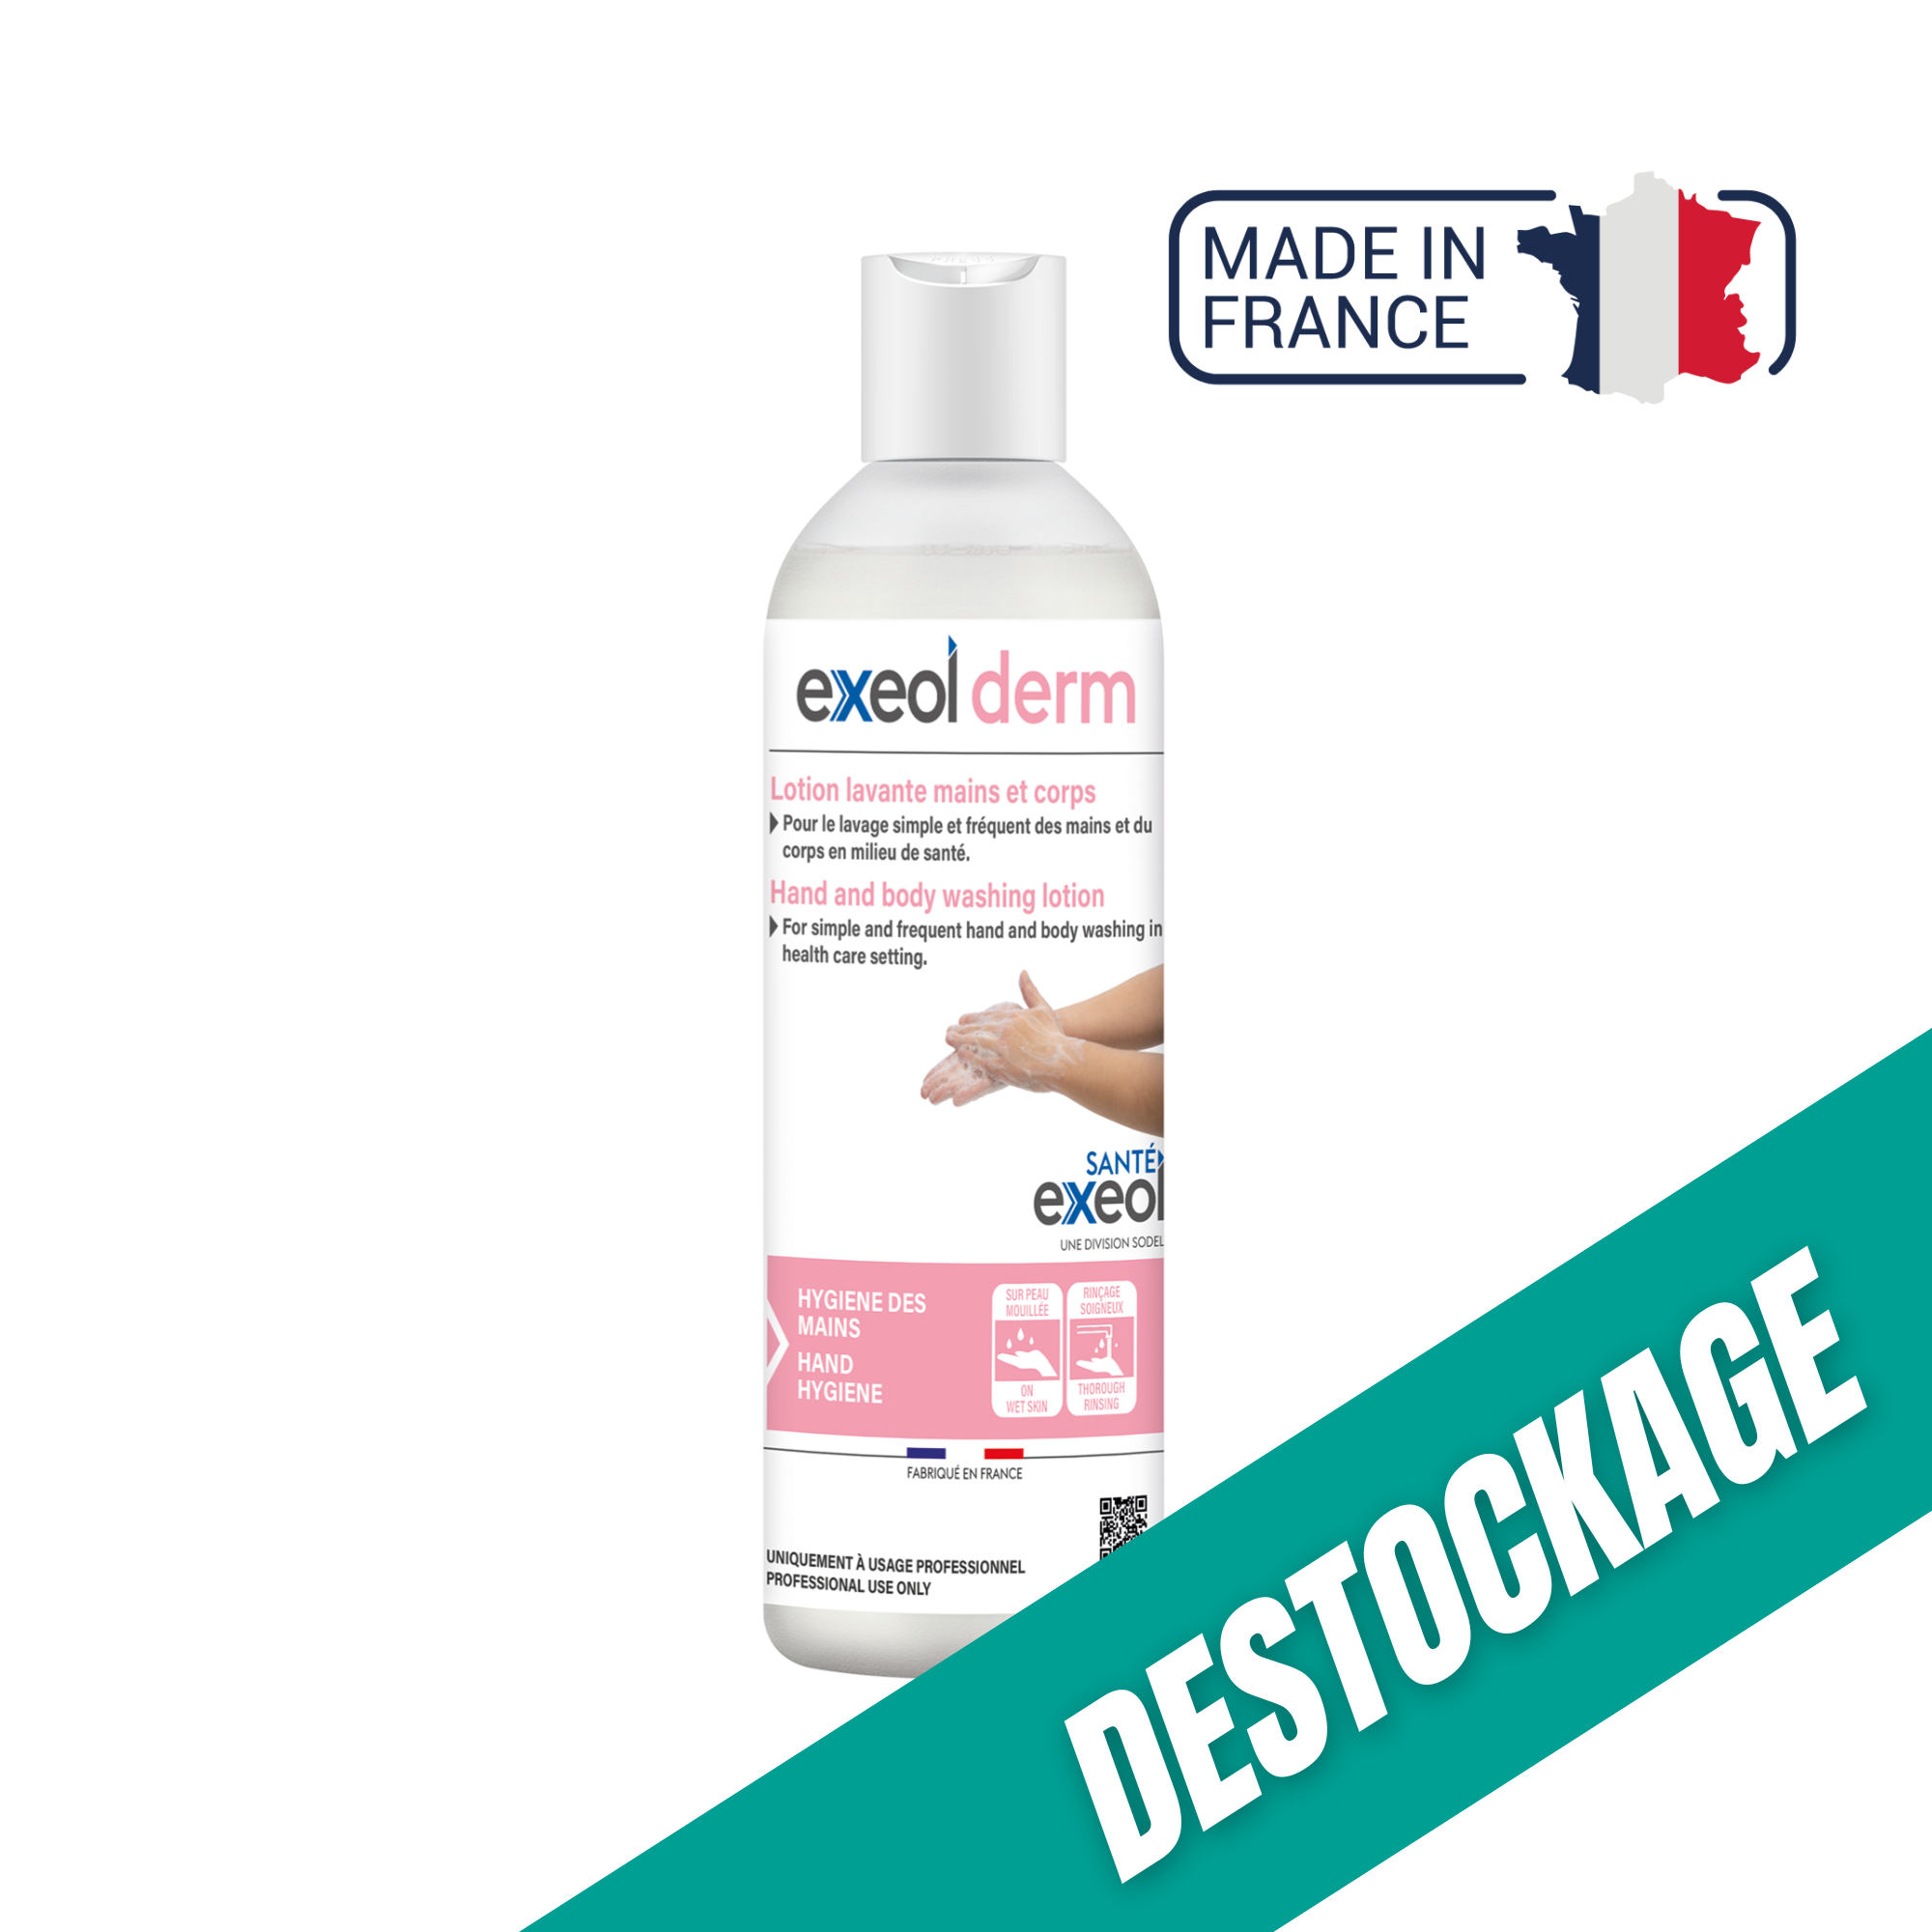 Lotion lavante mains et corps - Exeol derm - Sodel // Destockage